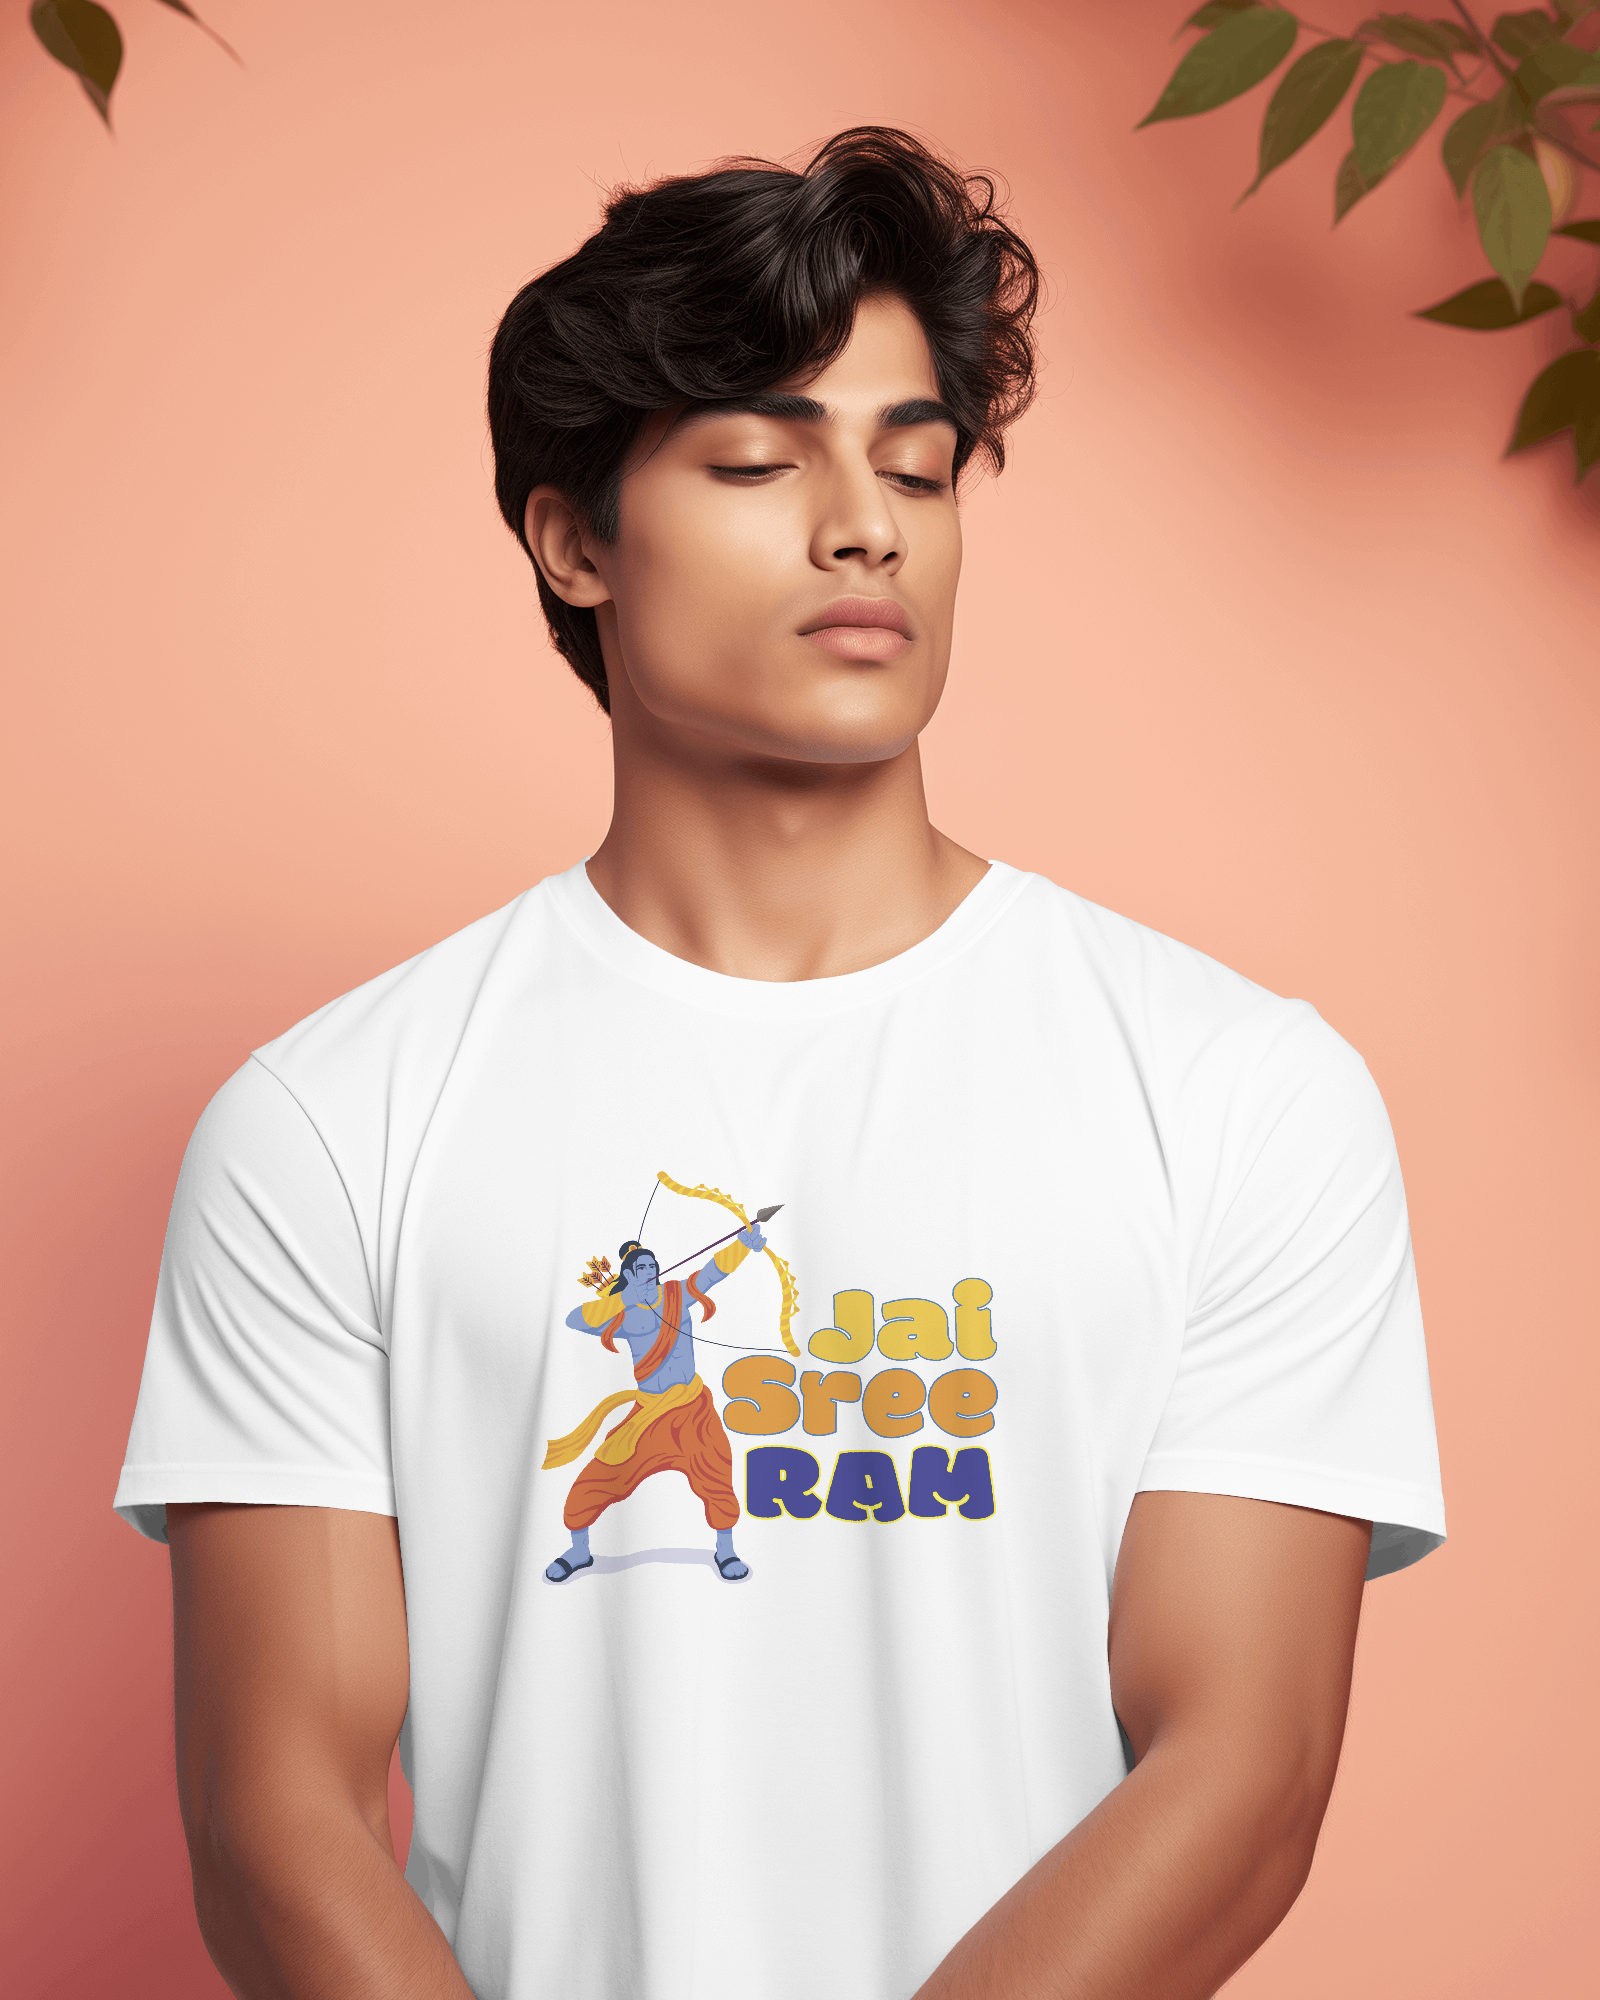 Jai Shree Ram Printed Tshirt for Men